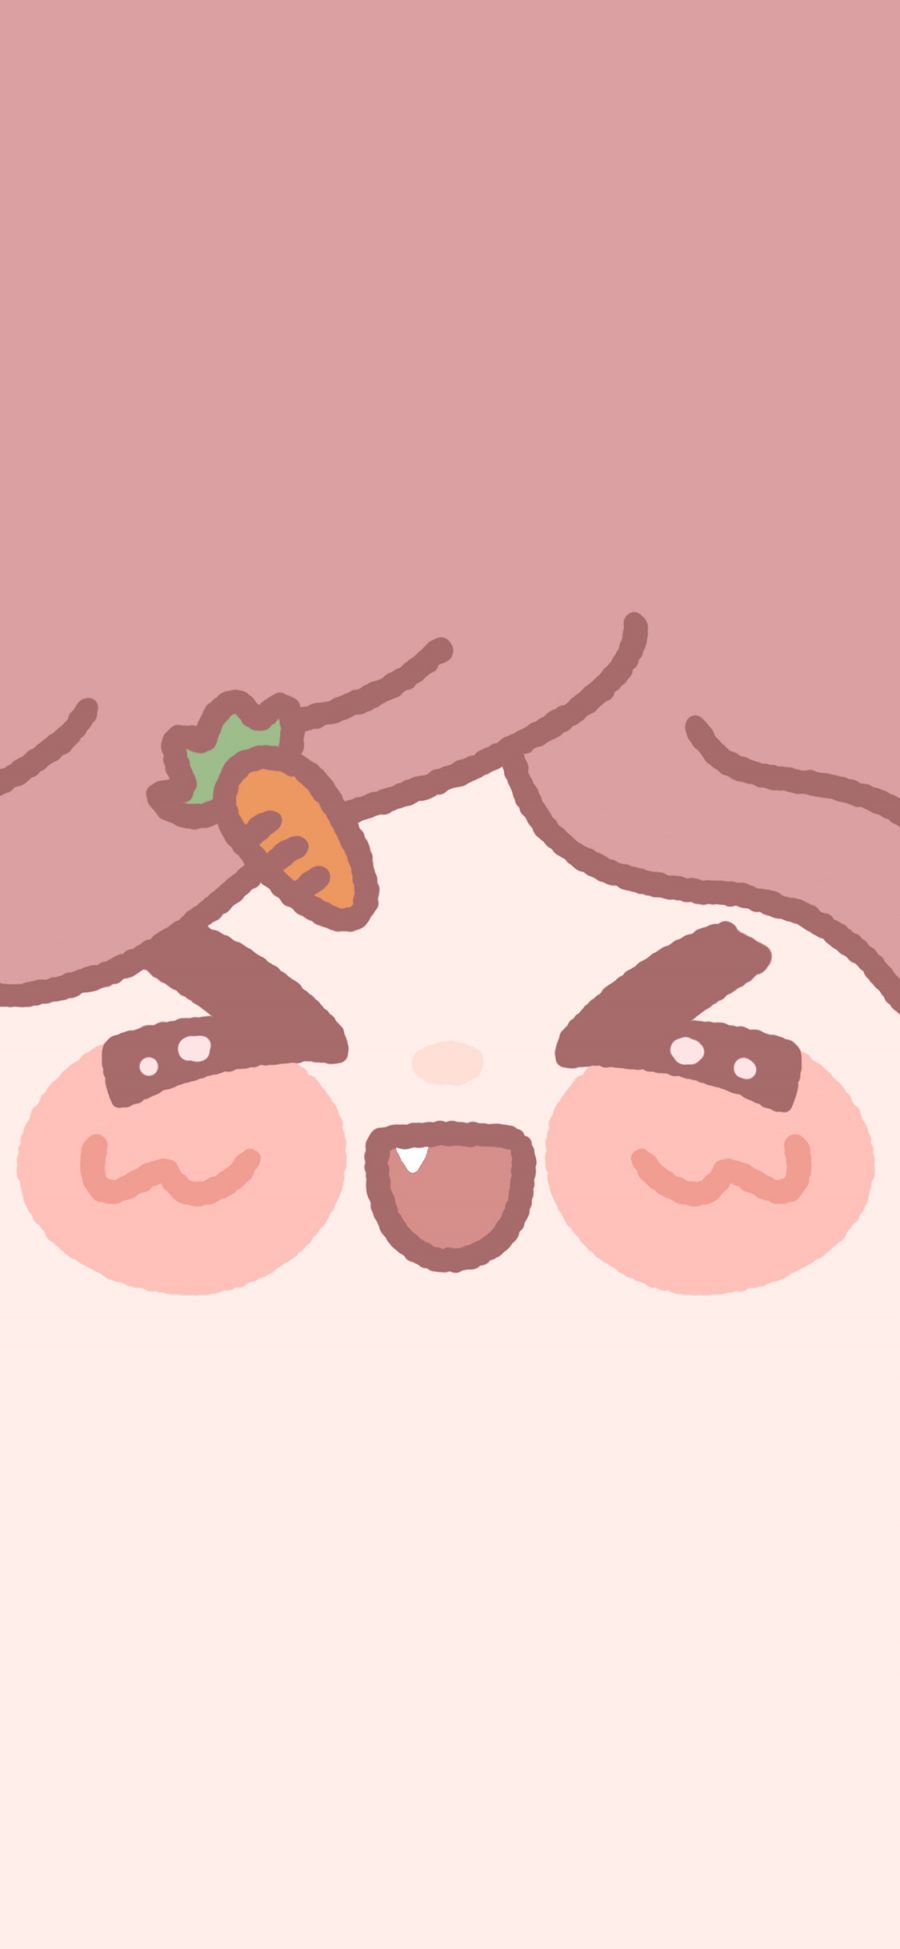 [2436×1125]笑脸 大脸 发卡 胡萝卜 粉色 苹果手机动漫壁纸图片